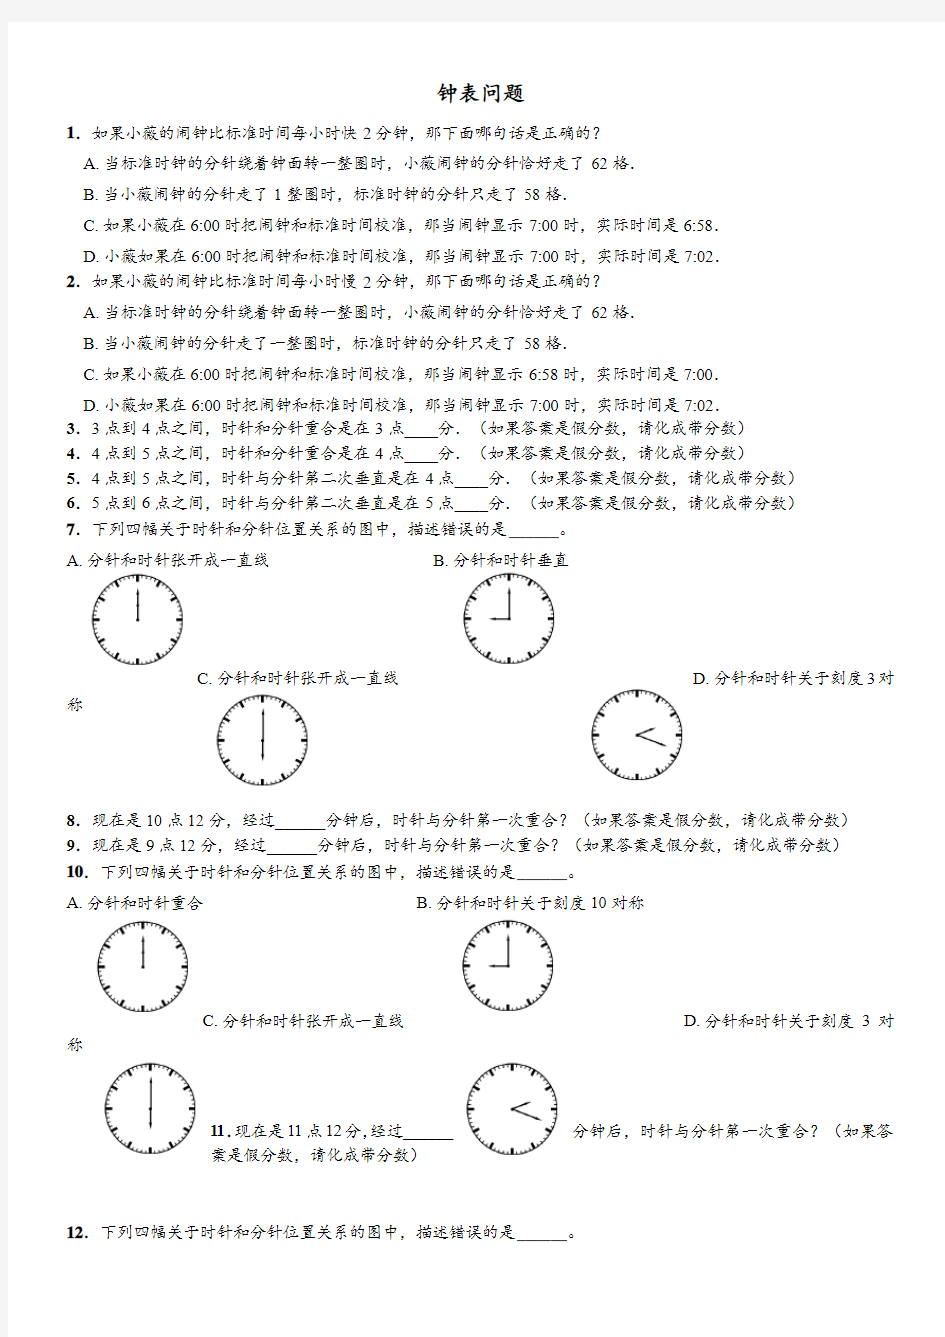 钟表行程问题60题(行测可学)